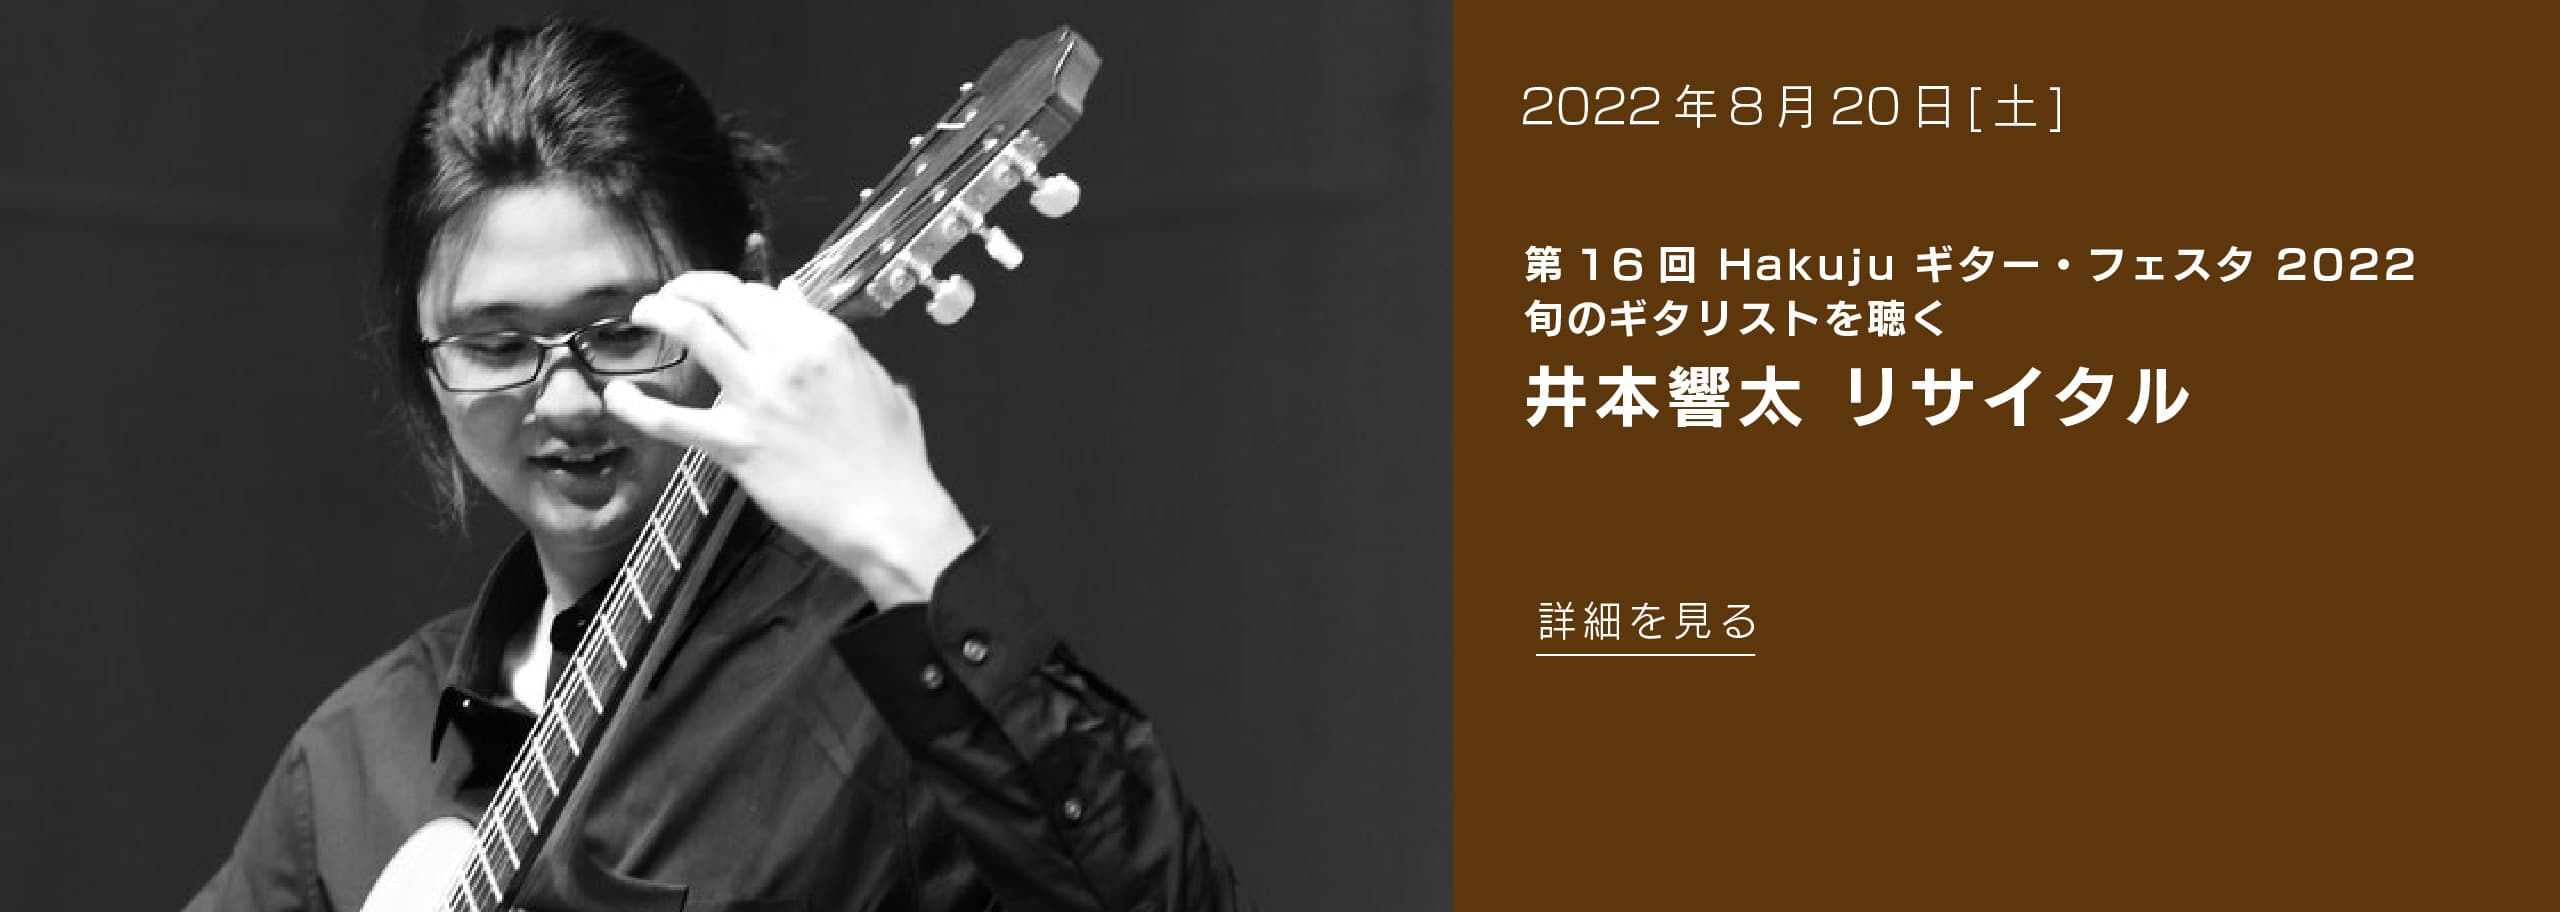 2022年8月20日(土) 第16回 Hakuju ギター・フェスタ 2022 旬のギタリストを聴く 井本響太 リサイタル